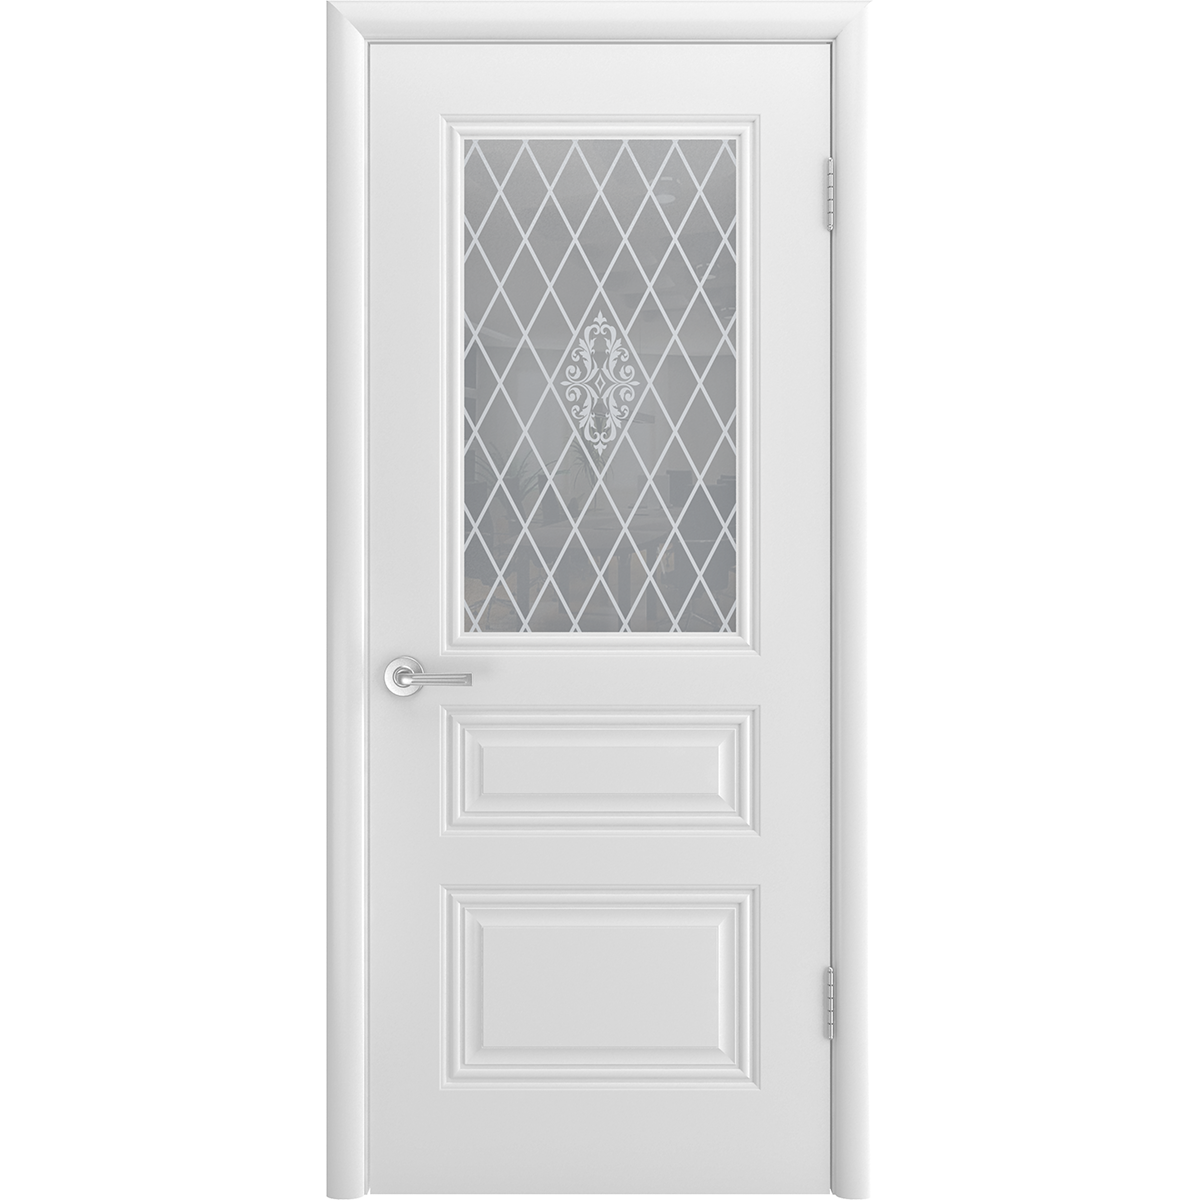 Межкомнатная дверь "Трио Грейс" (стекло)